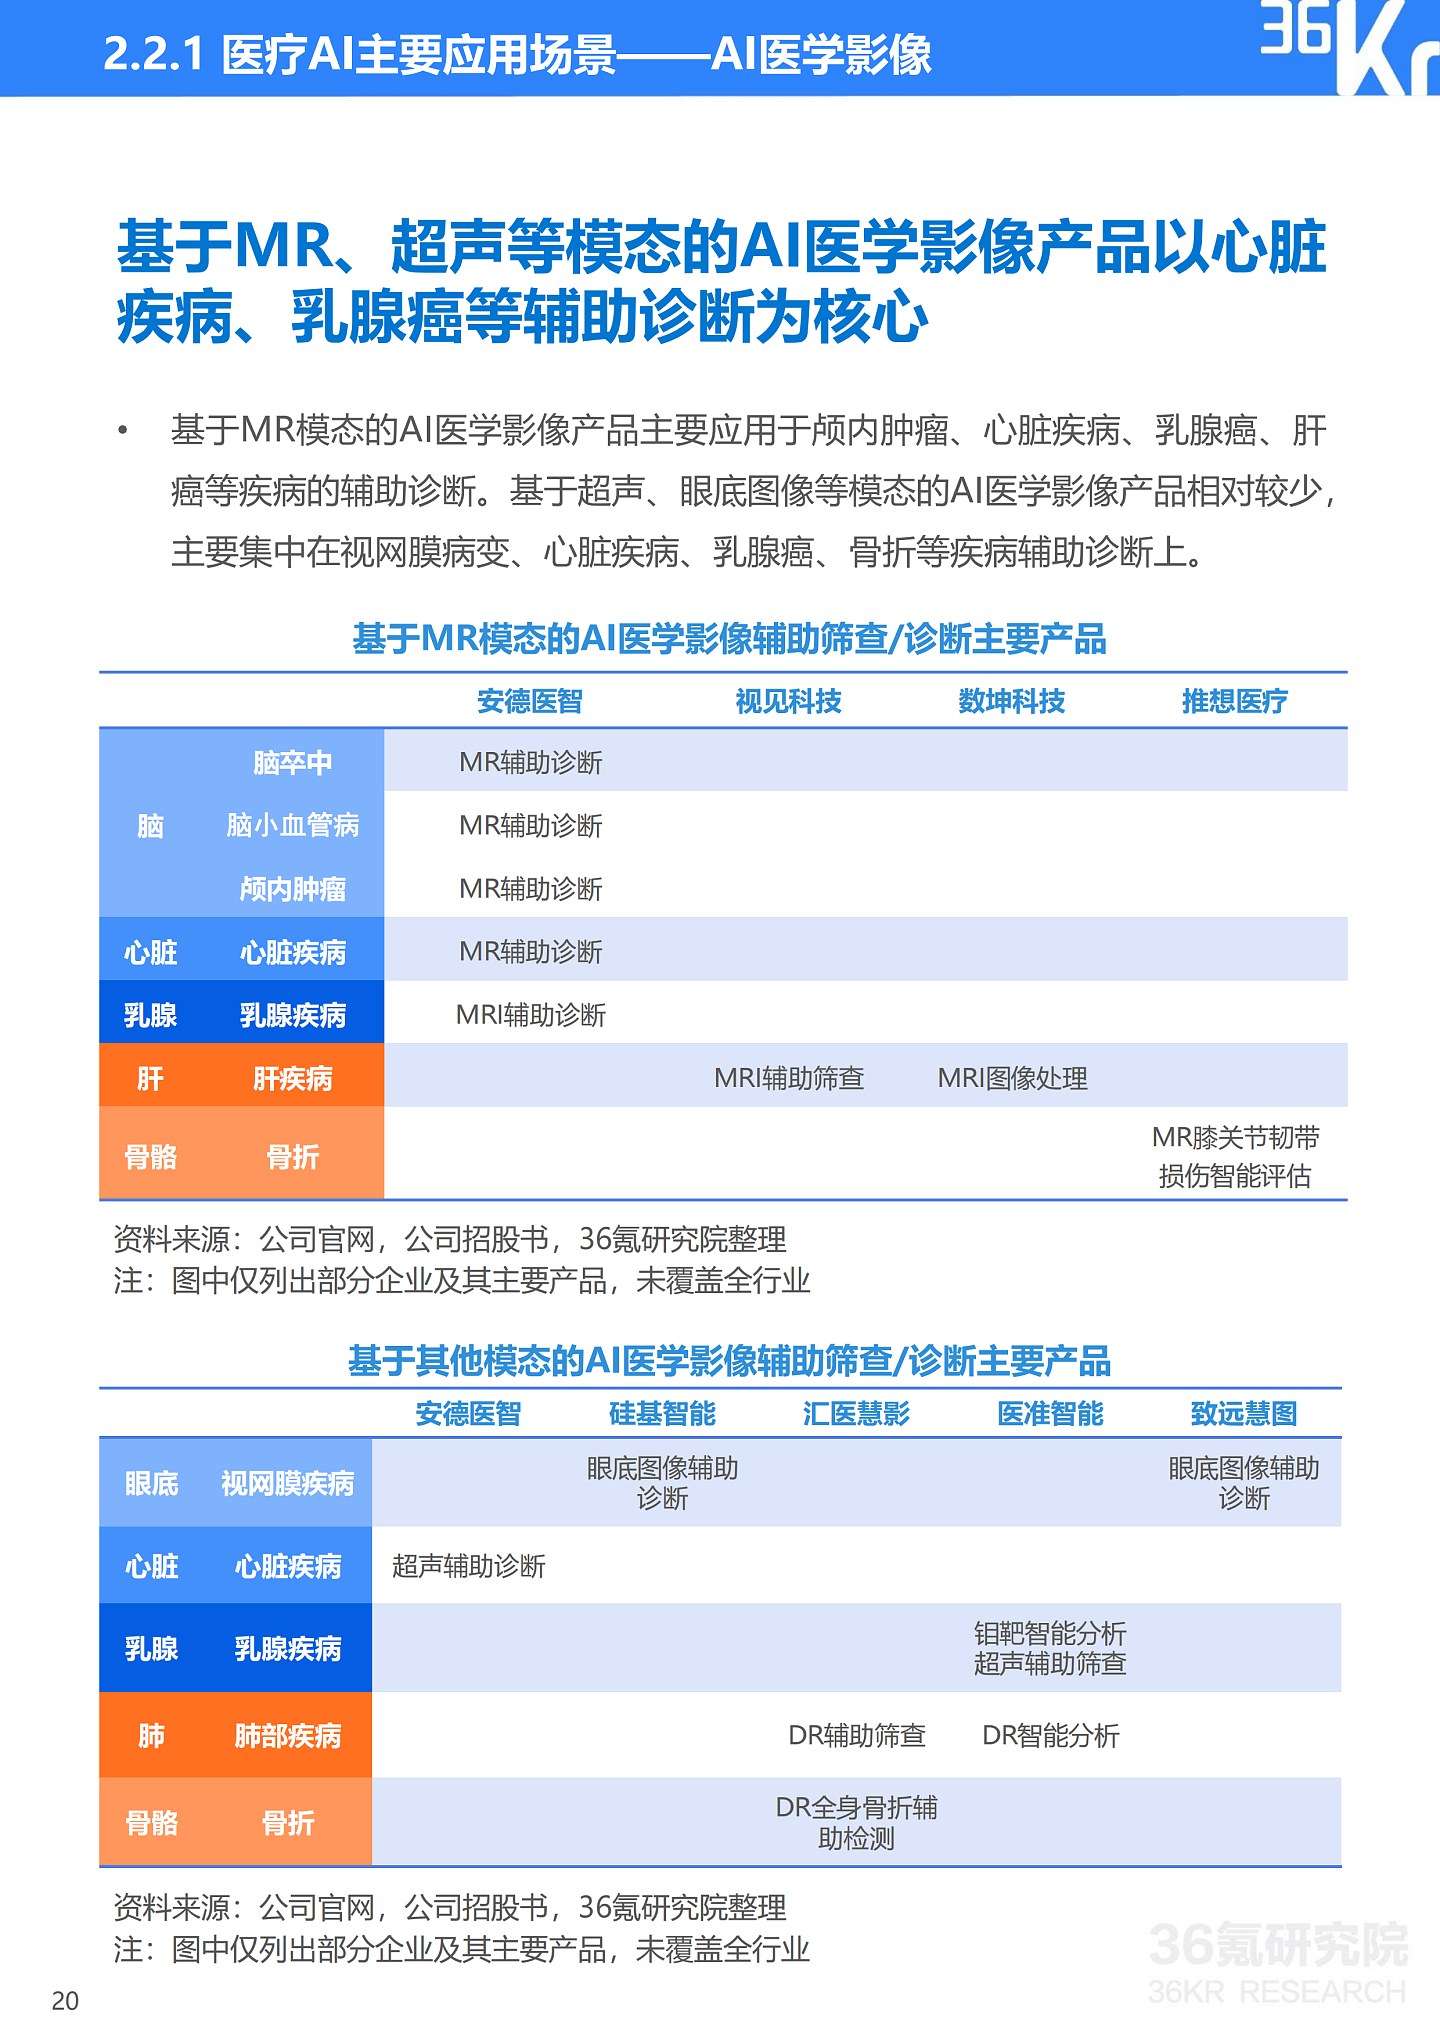 36氪研究院 | 2021年中国医疗AI行业研究报告 - 23